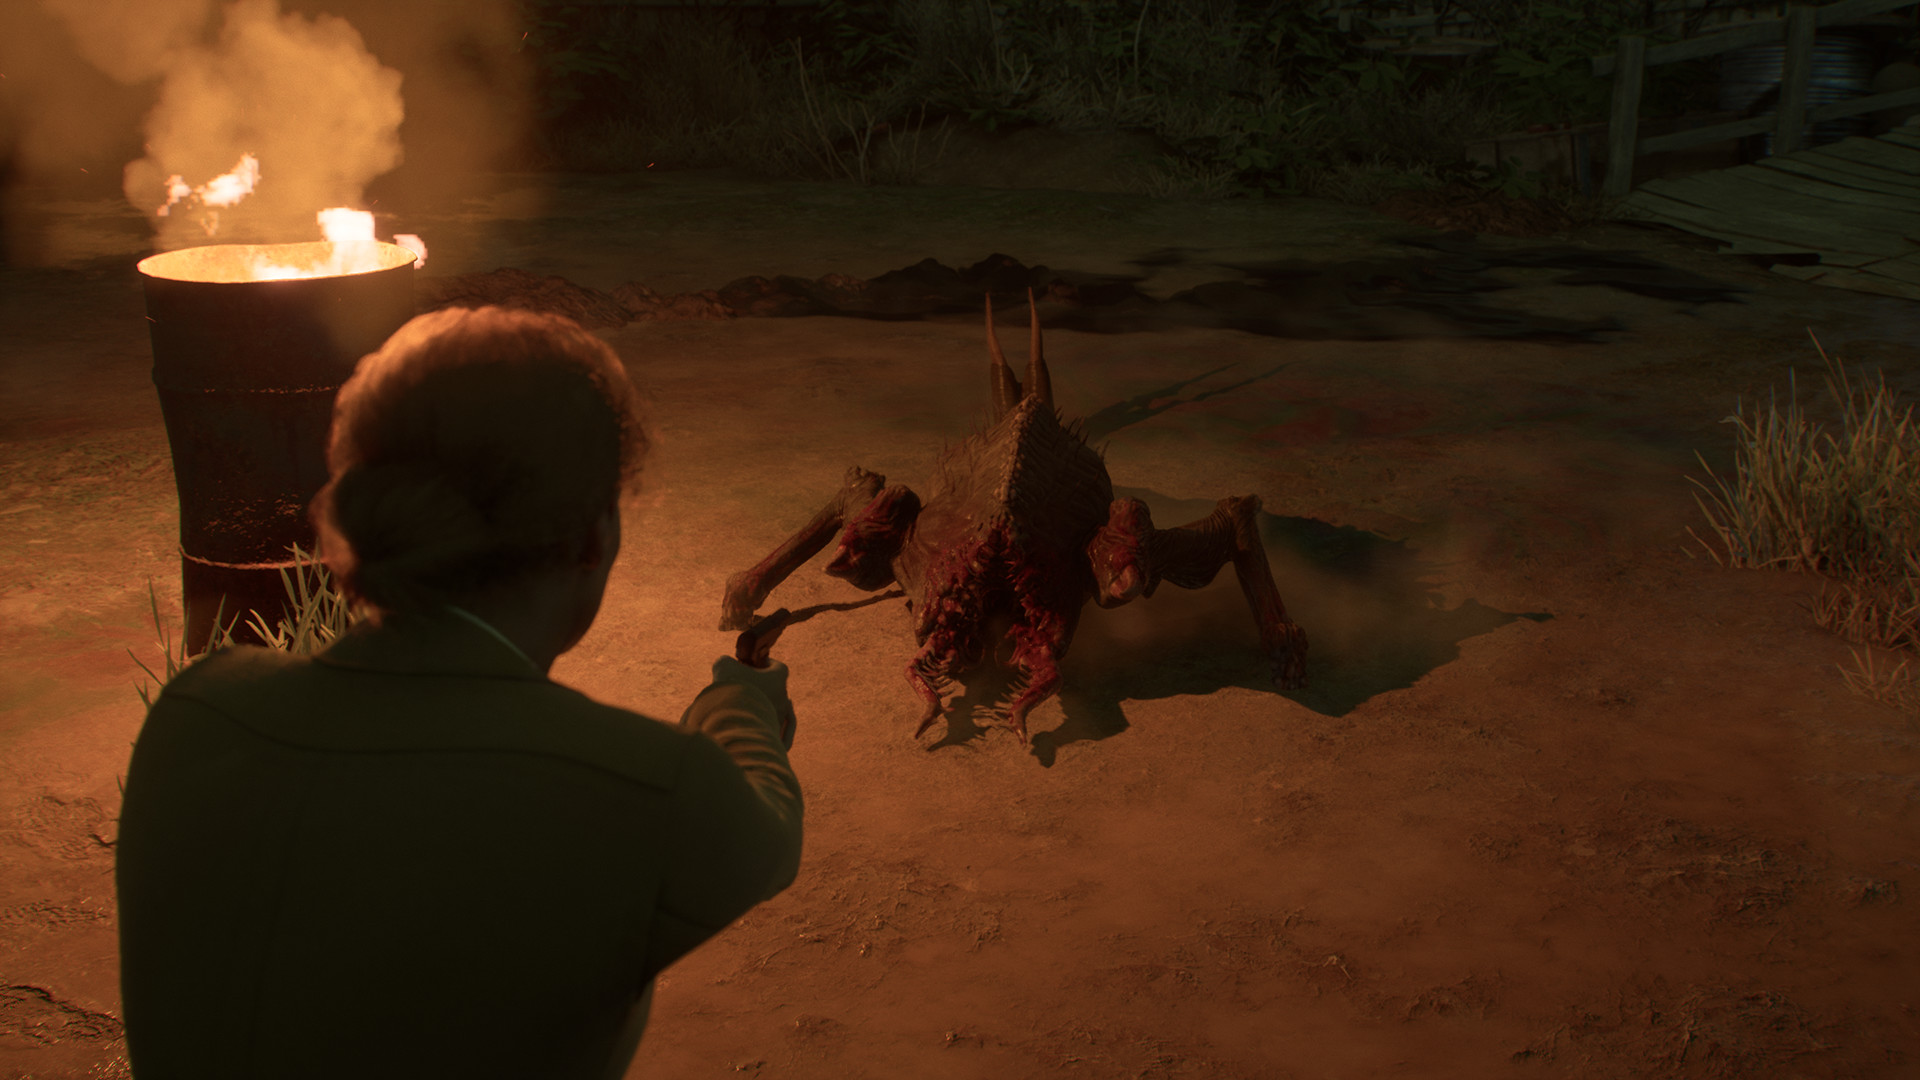 心理恐怖遊戲《鬼屋魔影》重置版現已正式發售 獲多半好評